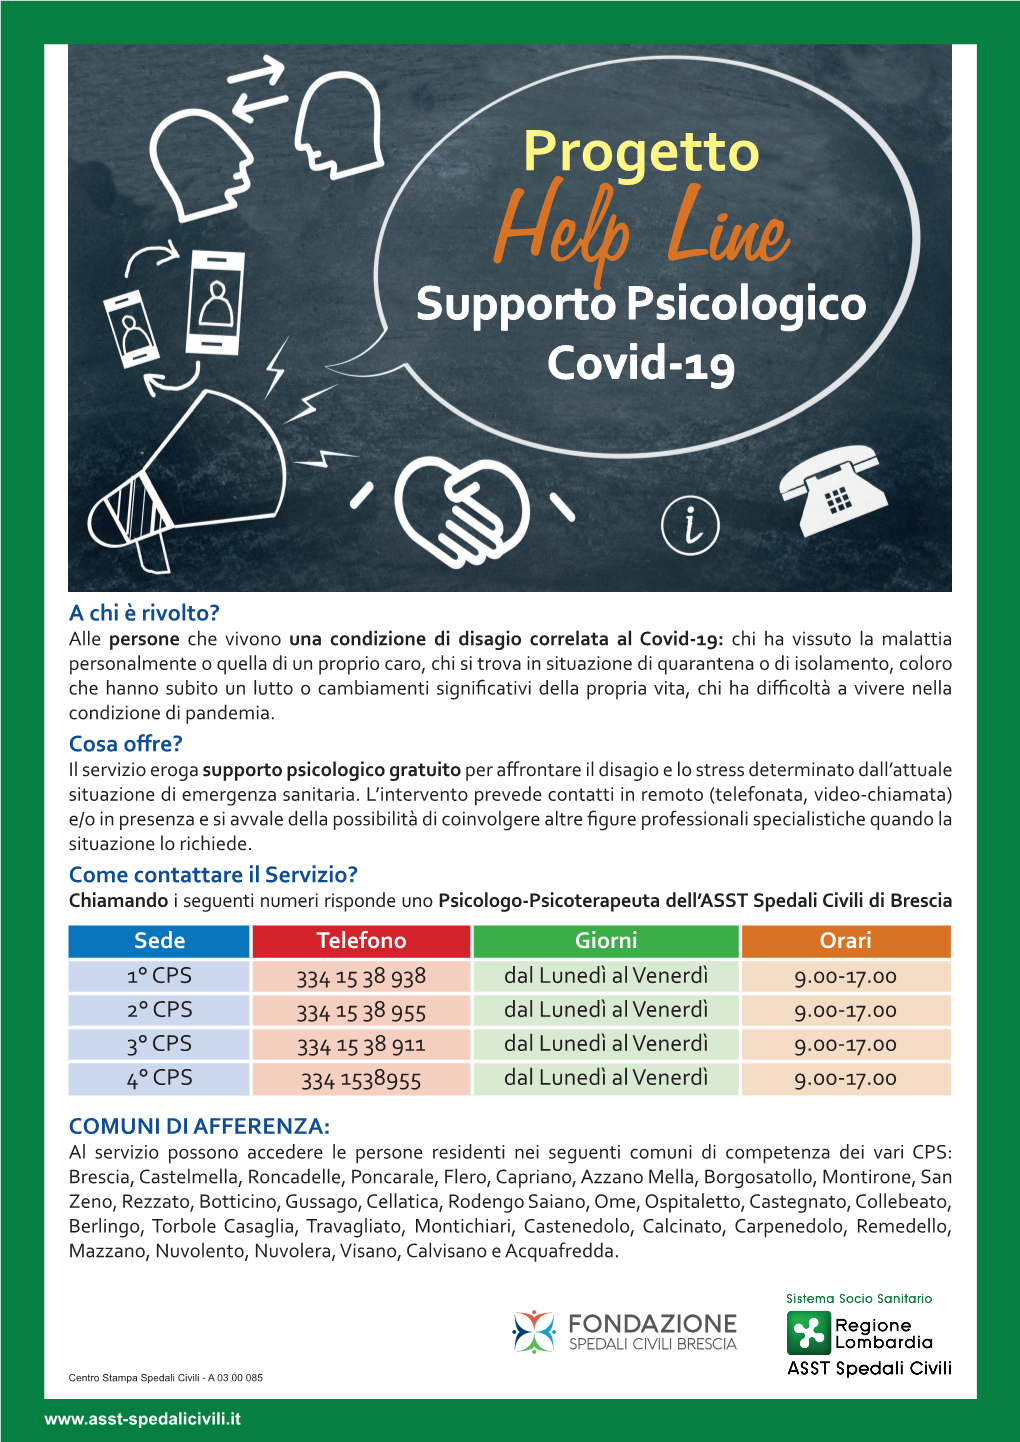 Progetto Help Line Supporto Psicologico Covid-19